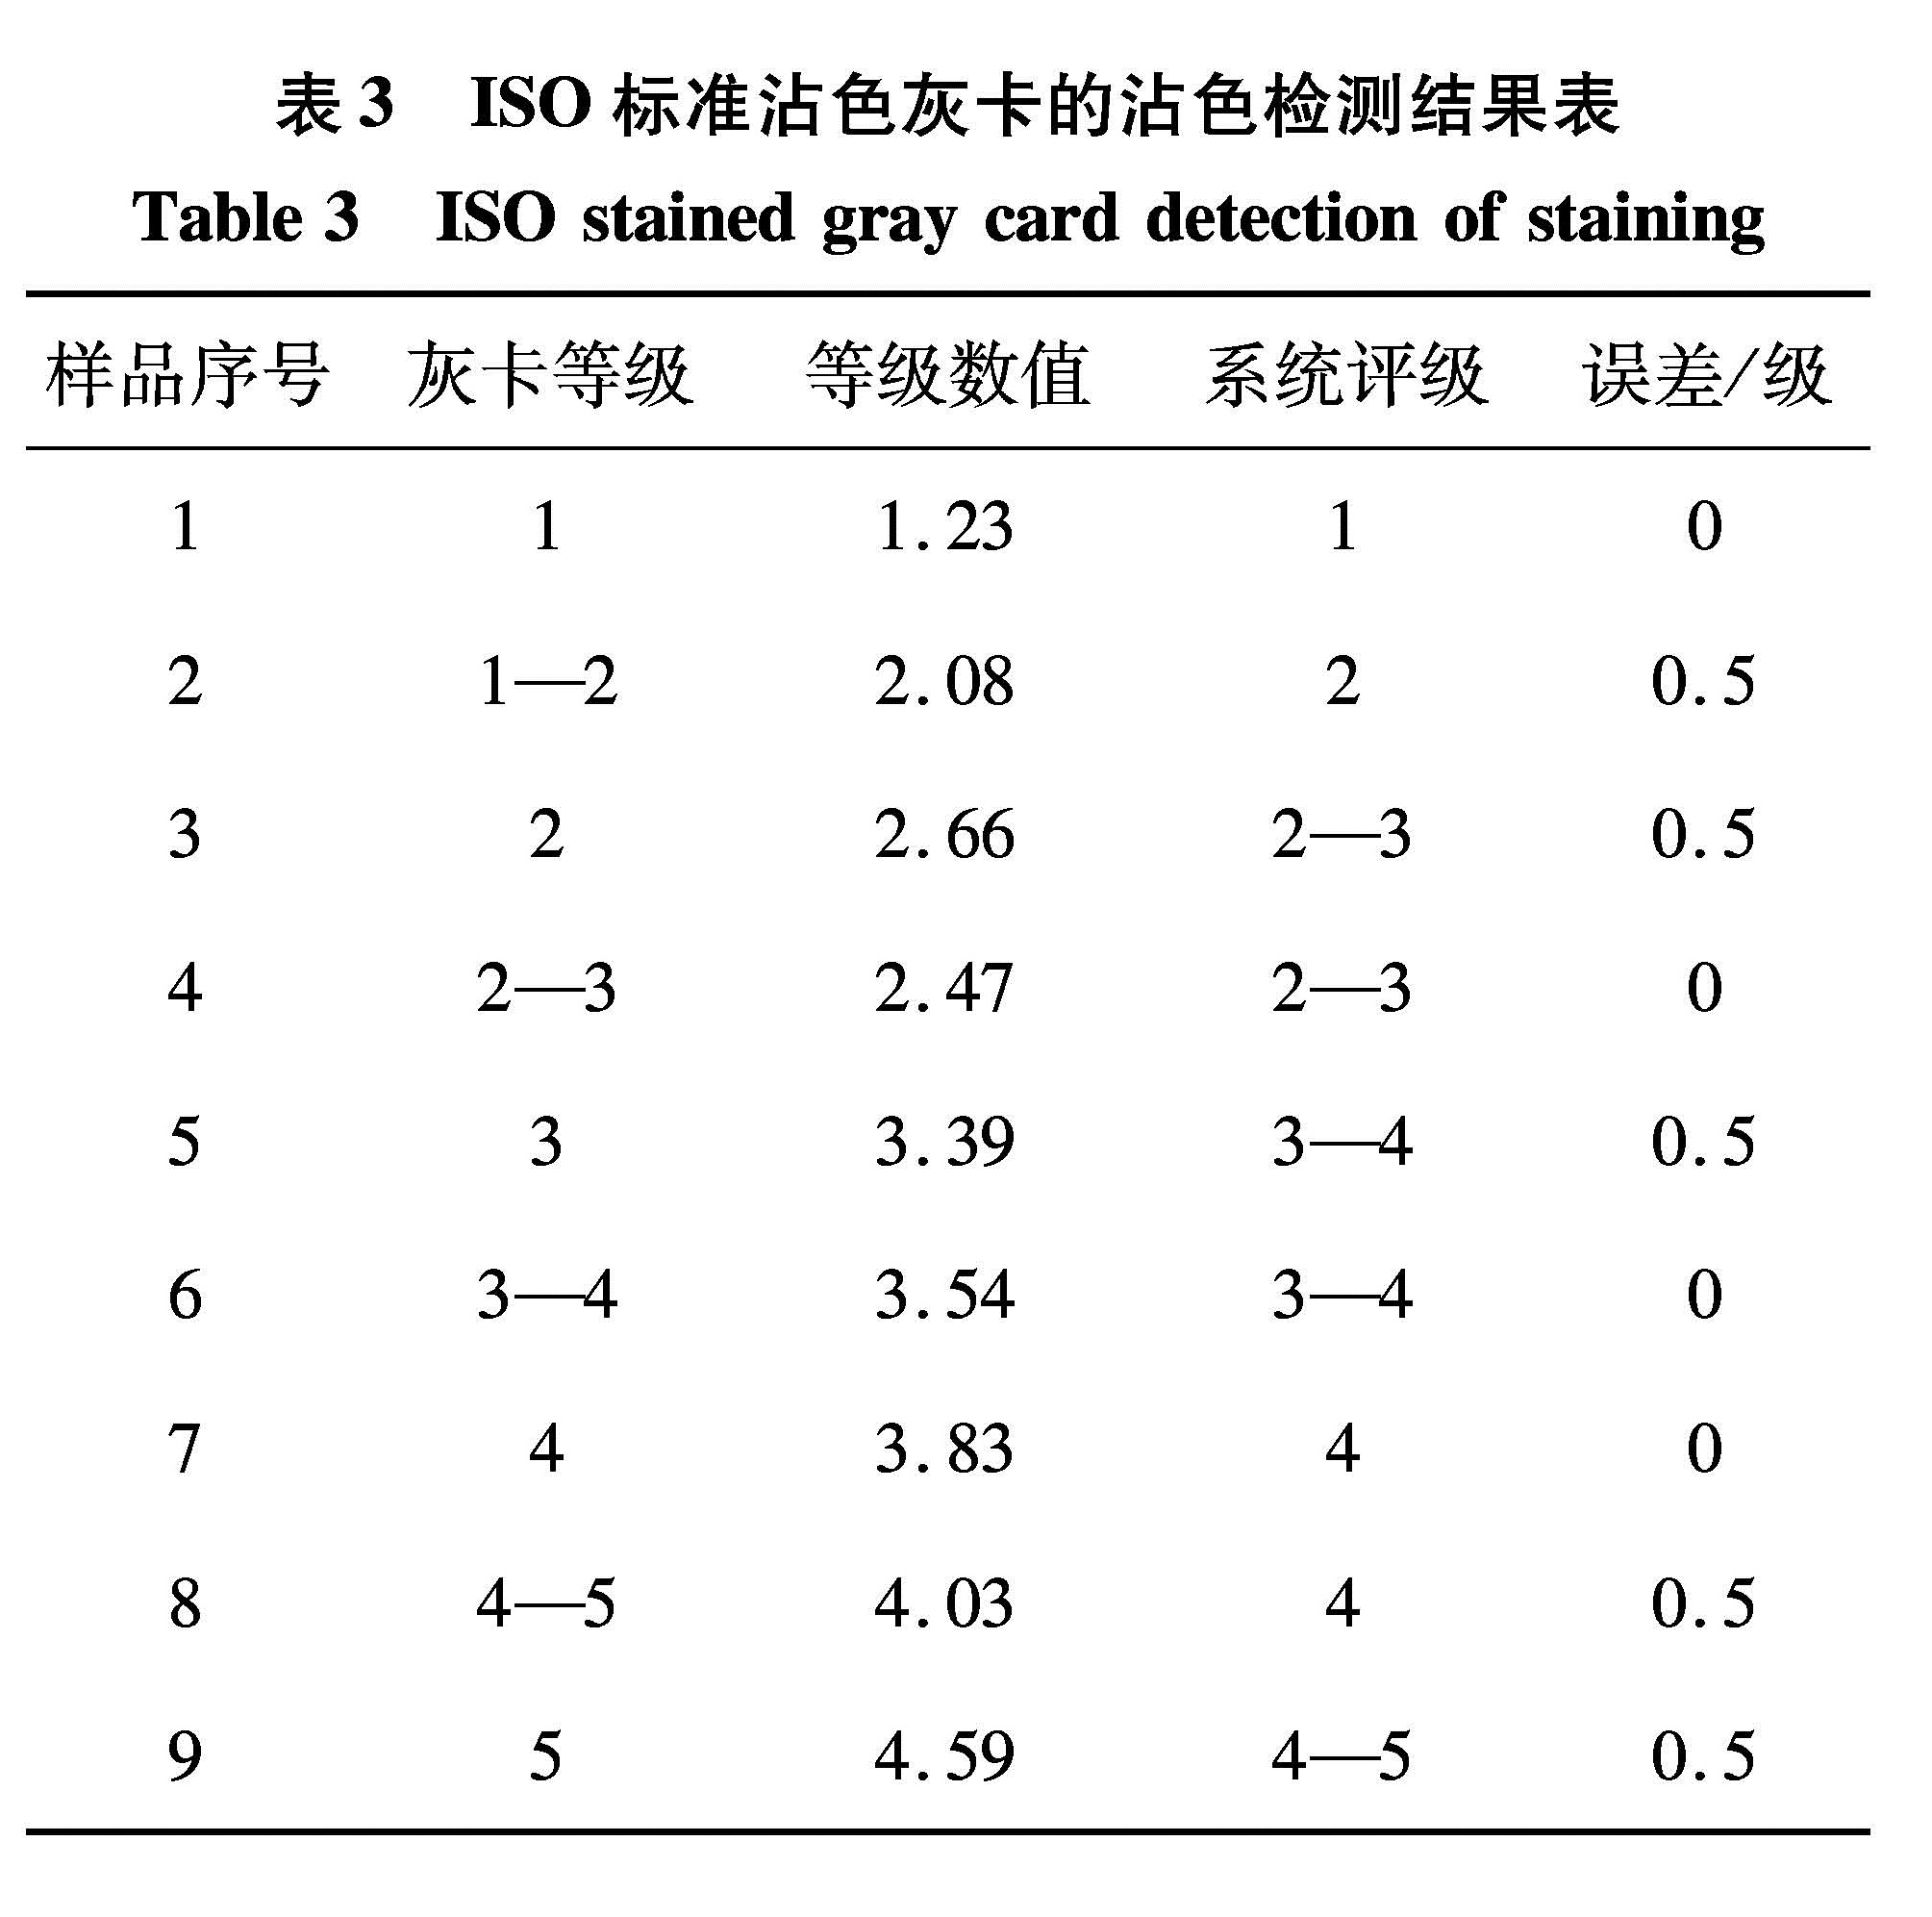 表3 ISO标准沾色灰卡的沾色检测结果表<br/>Table 3 ISO stained gray card detection of staining